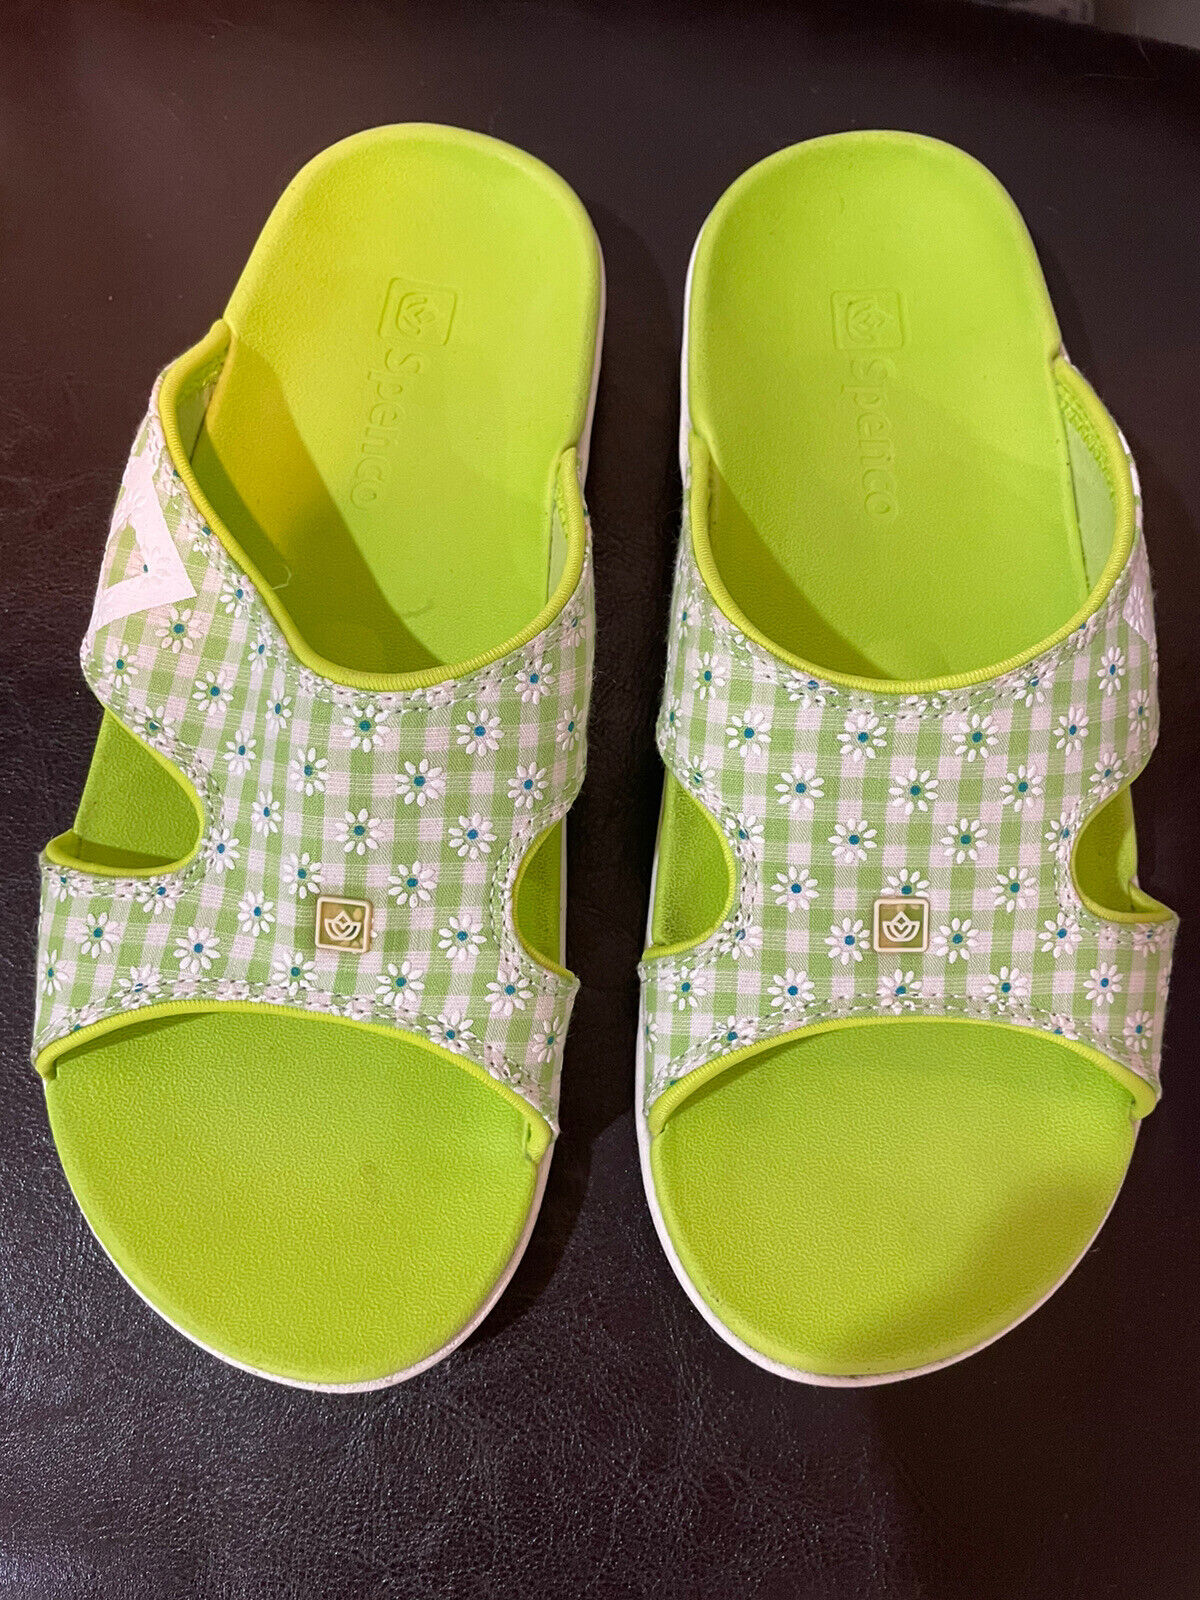 Spenco TS green white size 8 Sandals/slides - image 1